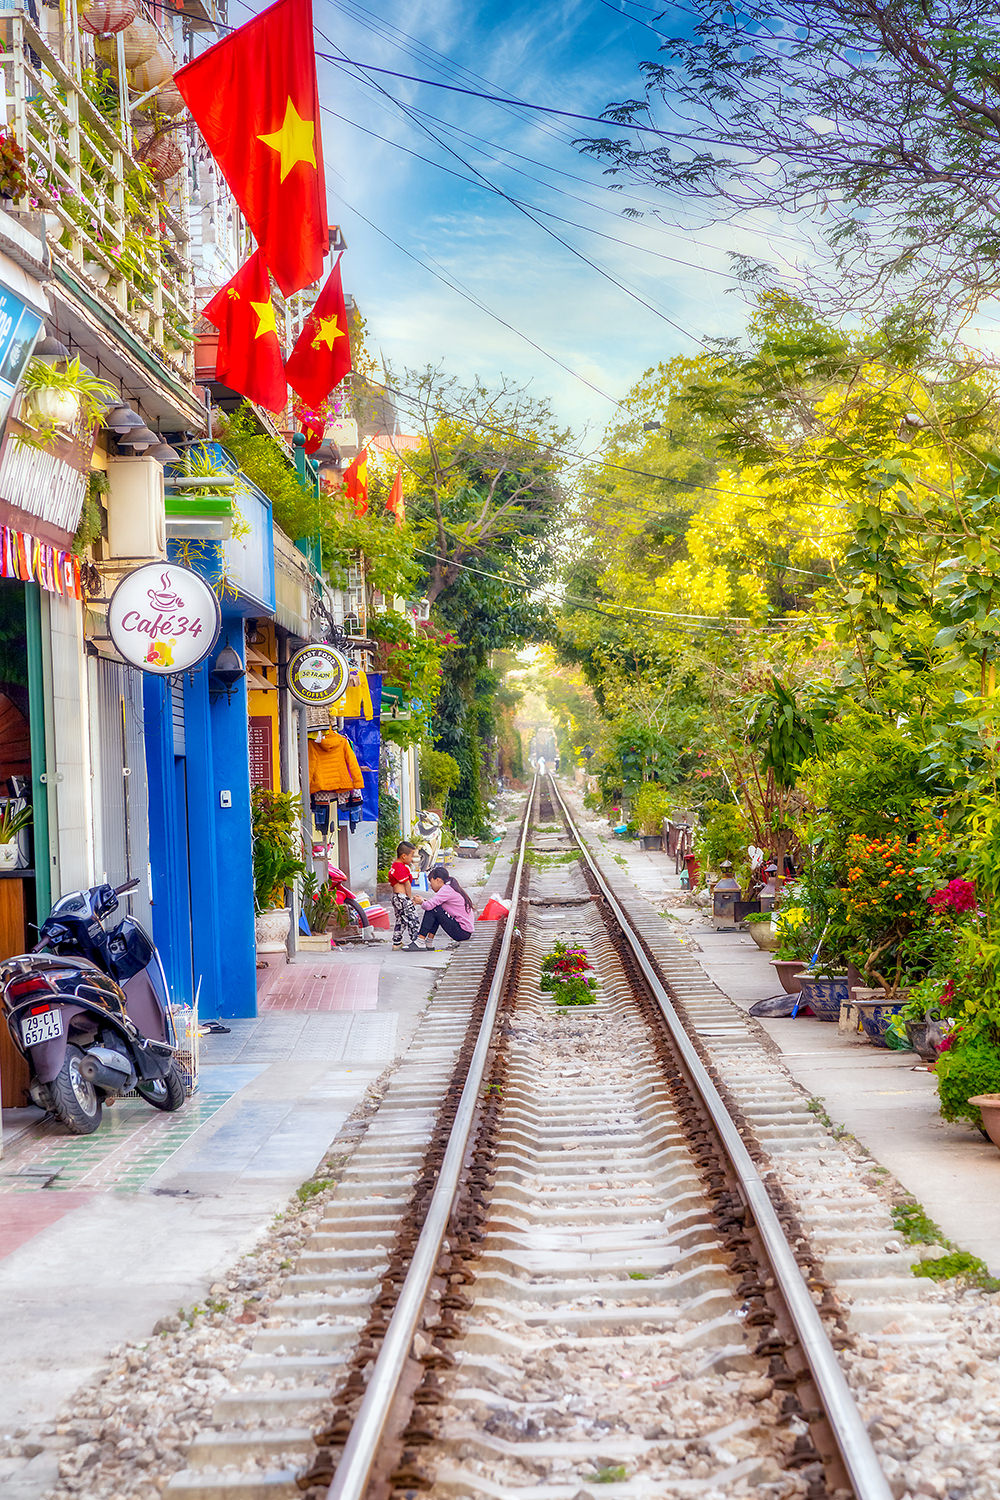 Вдоль железной дороги железная дорога Ханой Вьетнам railway Hanoi Vietnam